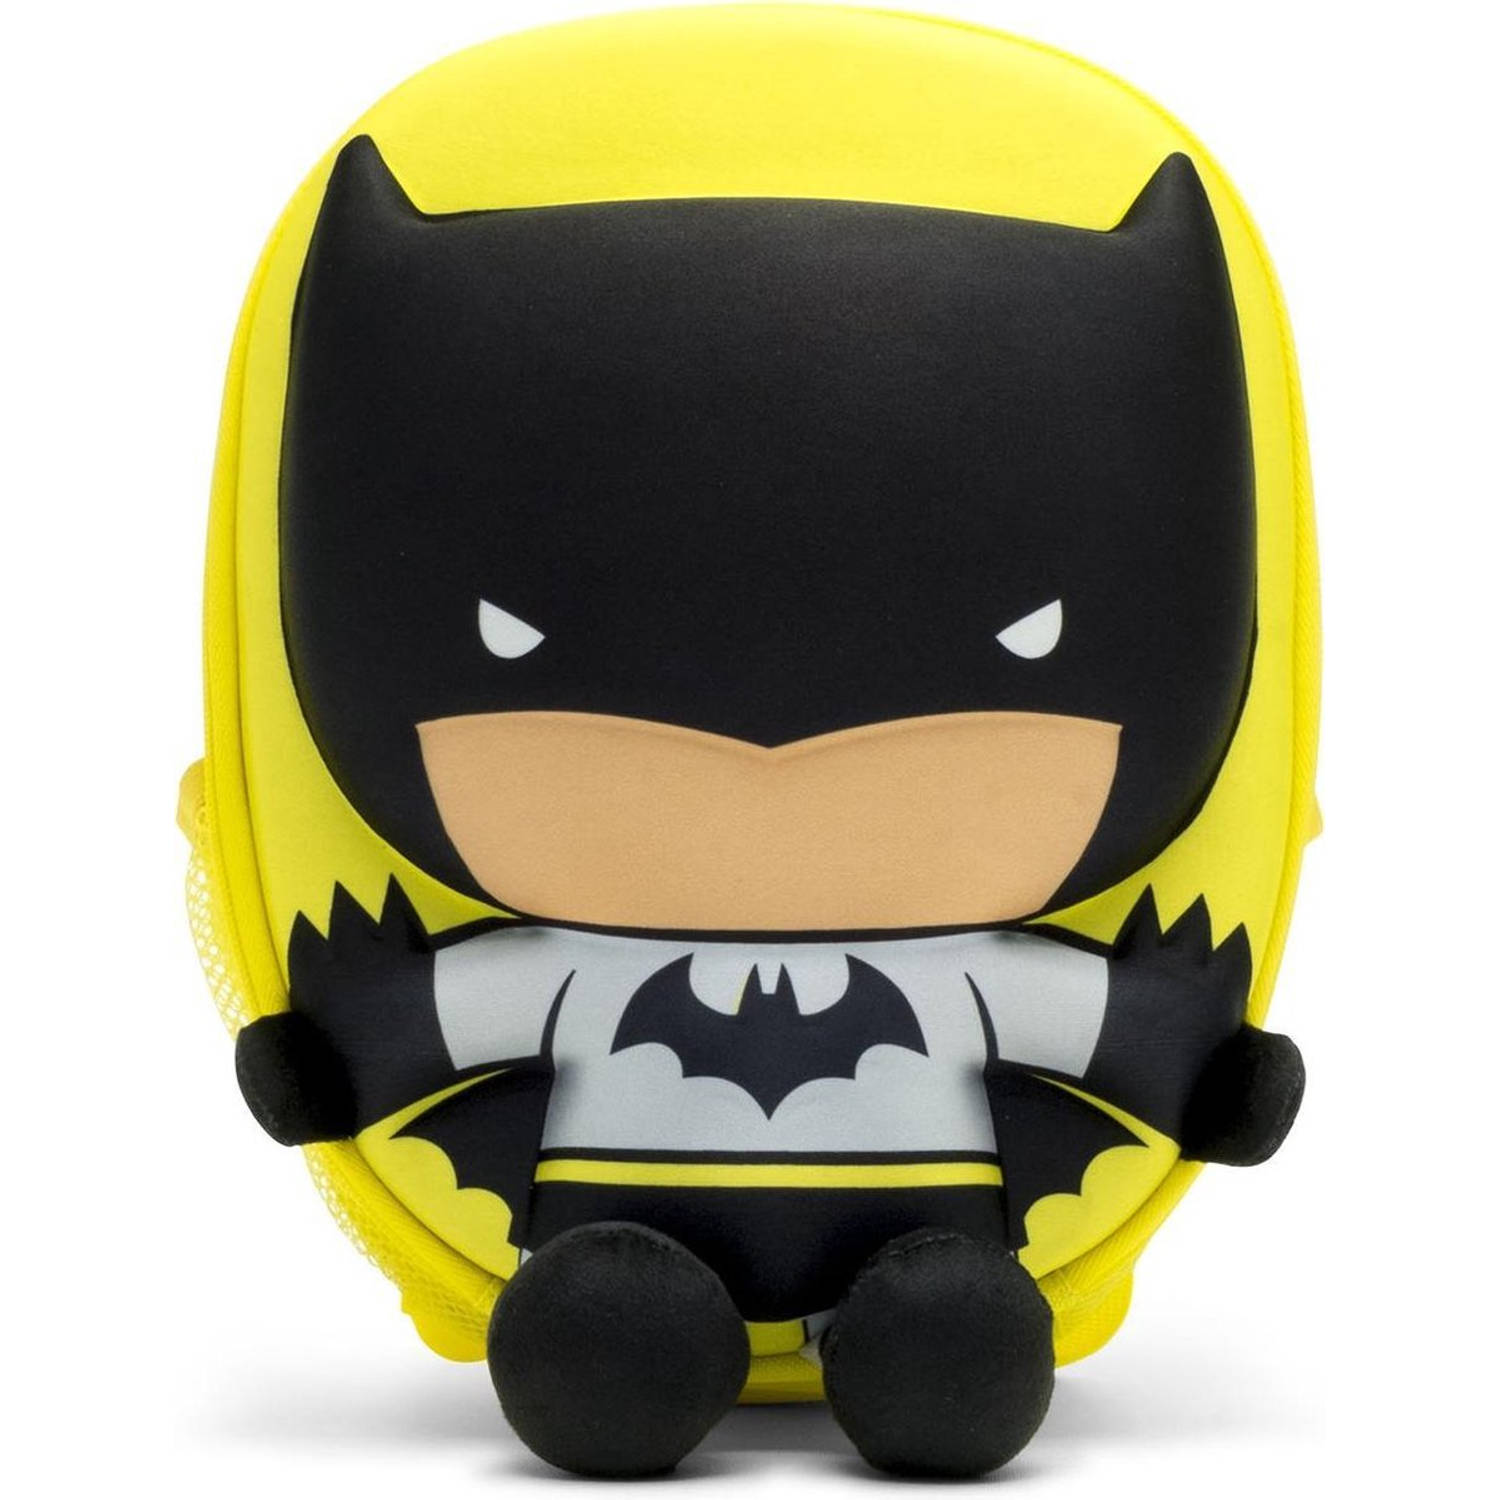 Ridaz rugzak Batman 6 liter zwart-geel